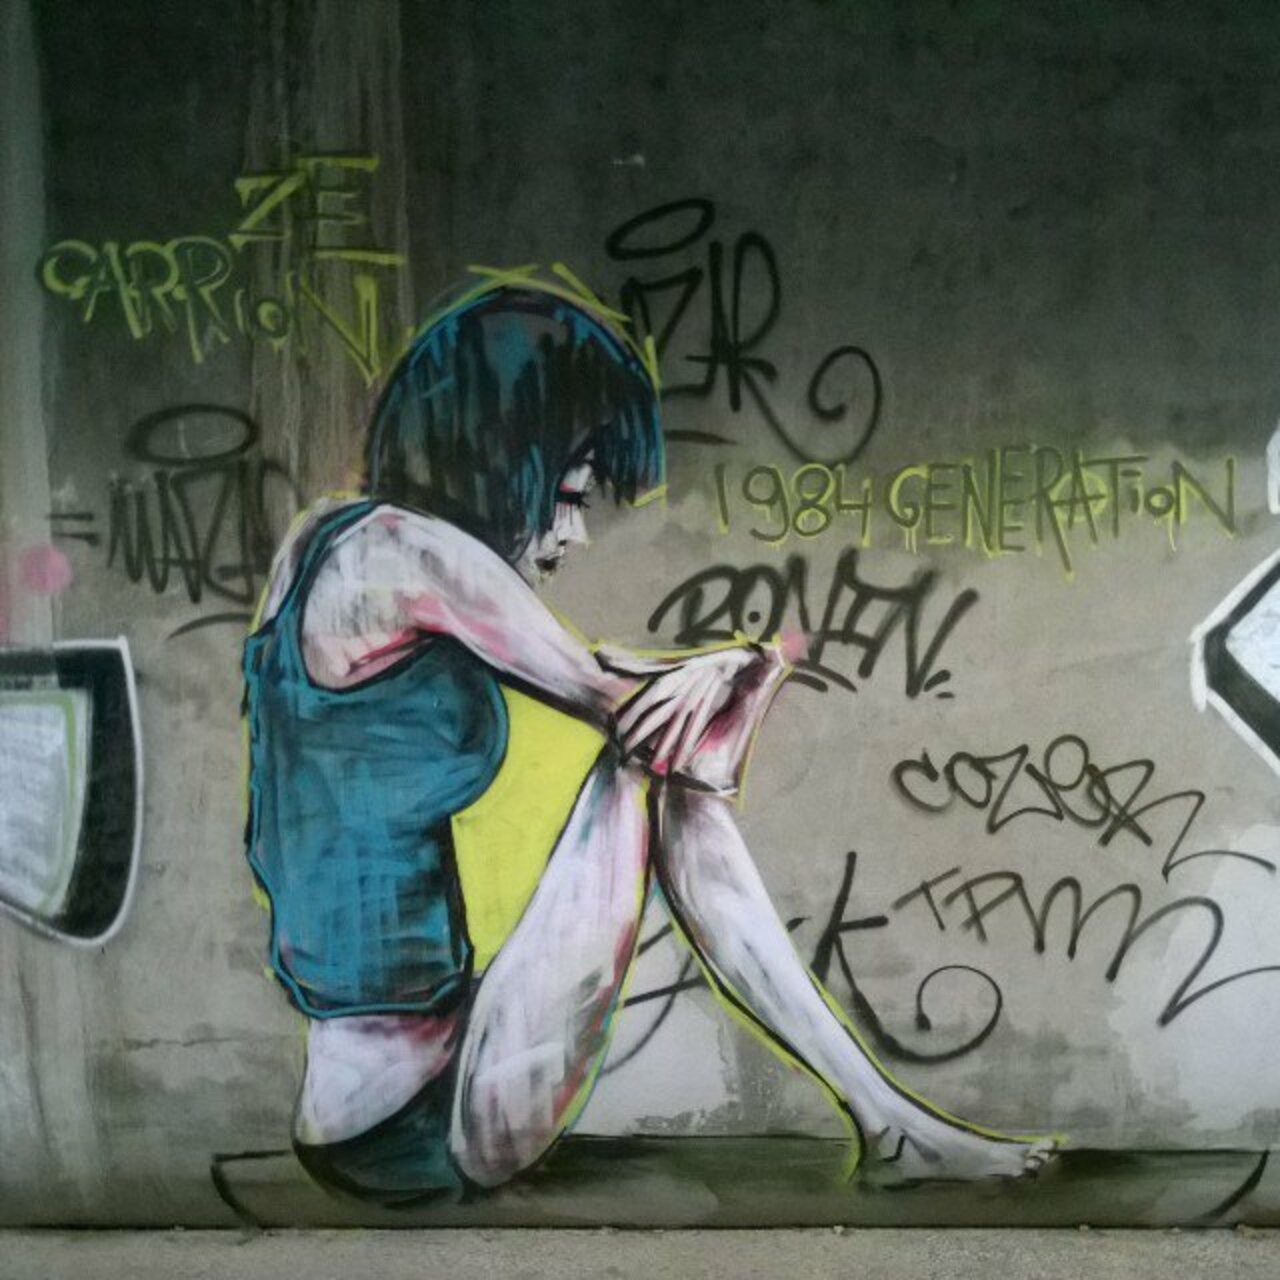 StArtEverywhere: #1984 #generation .. #love #ilegal. #zecarrion at #paris . #lavillette . #graffiti #streetart #st… https://t.co/So5skAHj7m